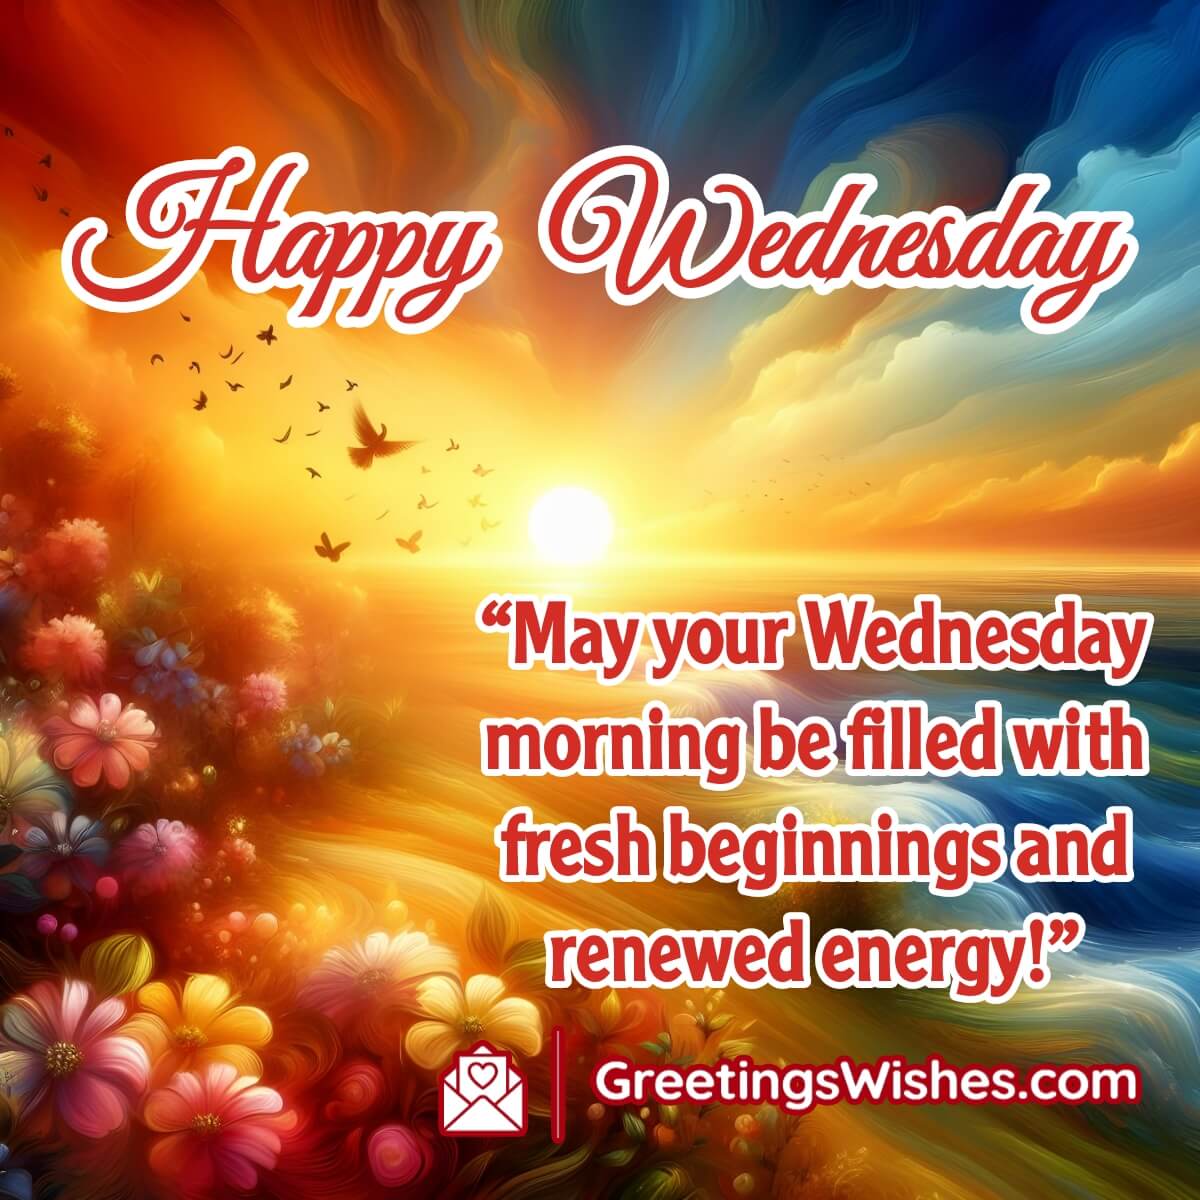 Wednesday Morning Wish Image